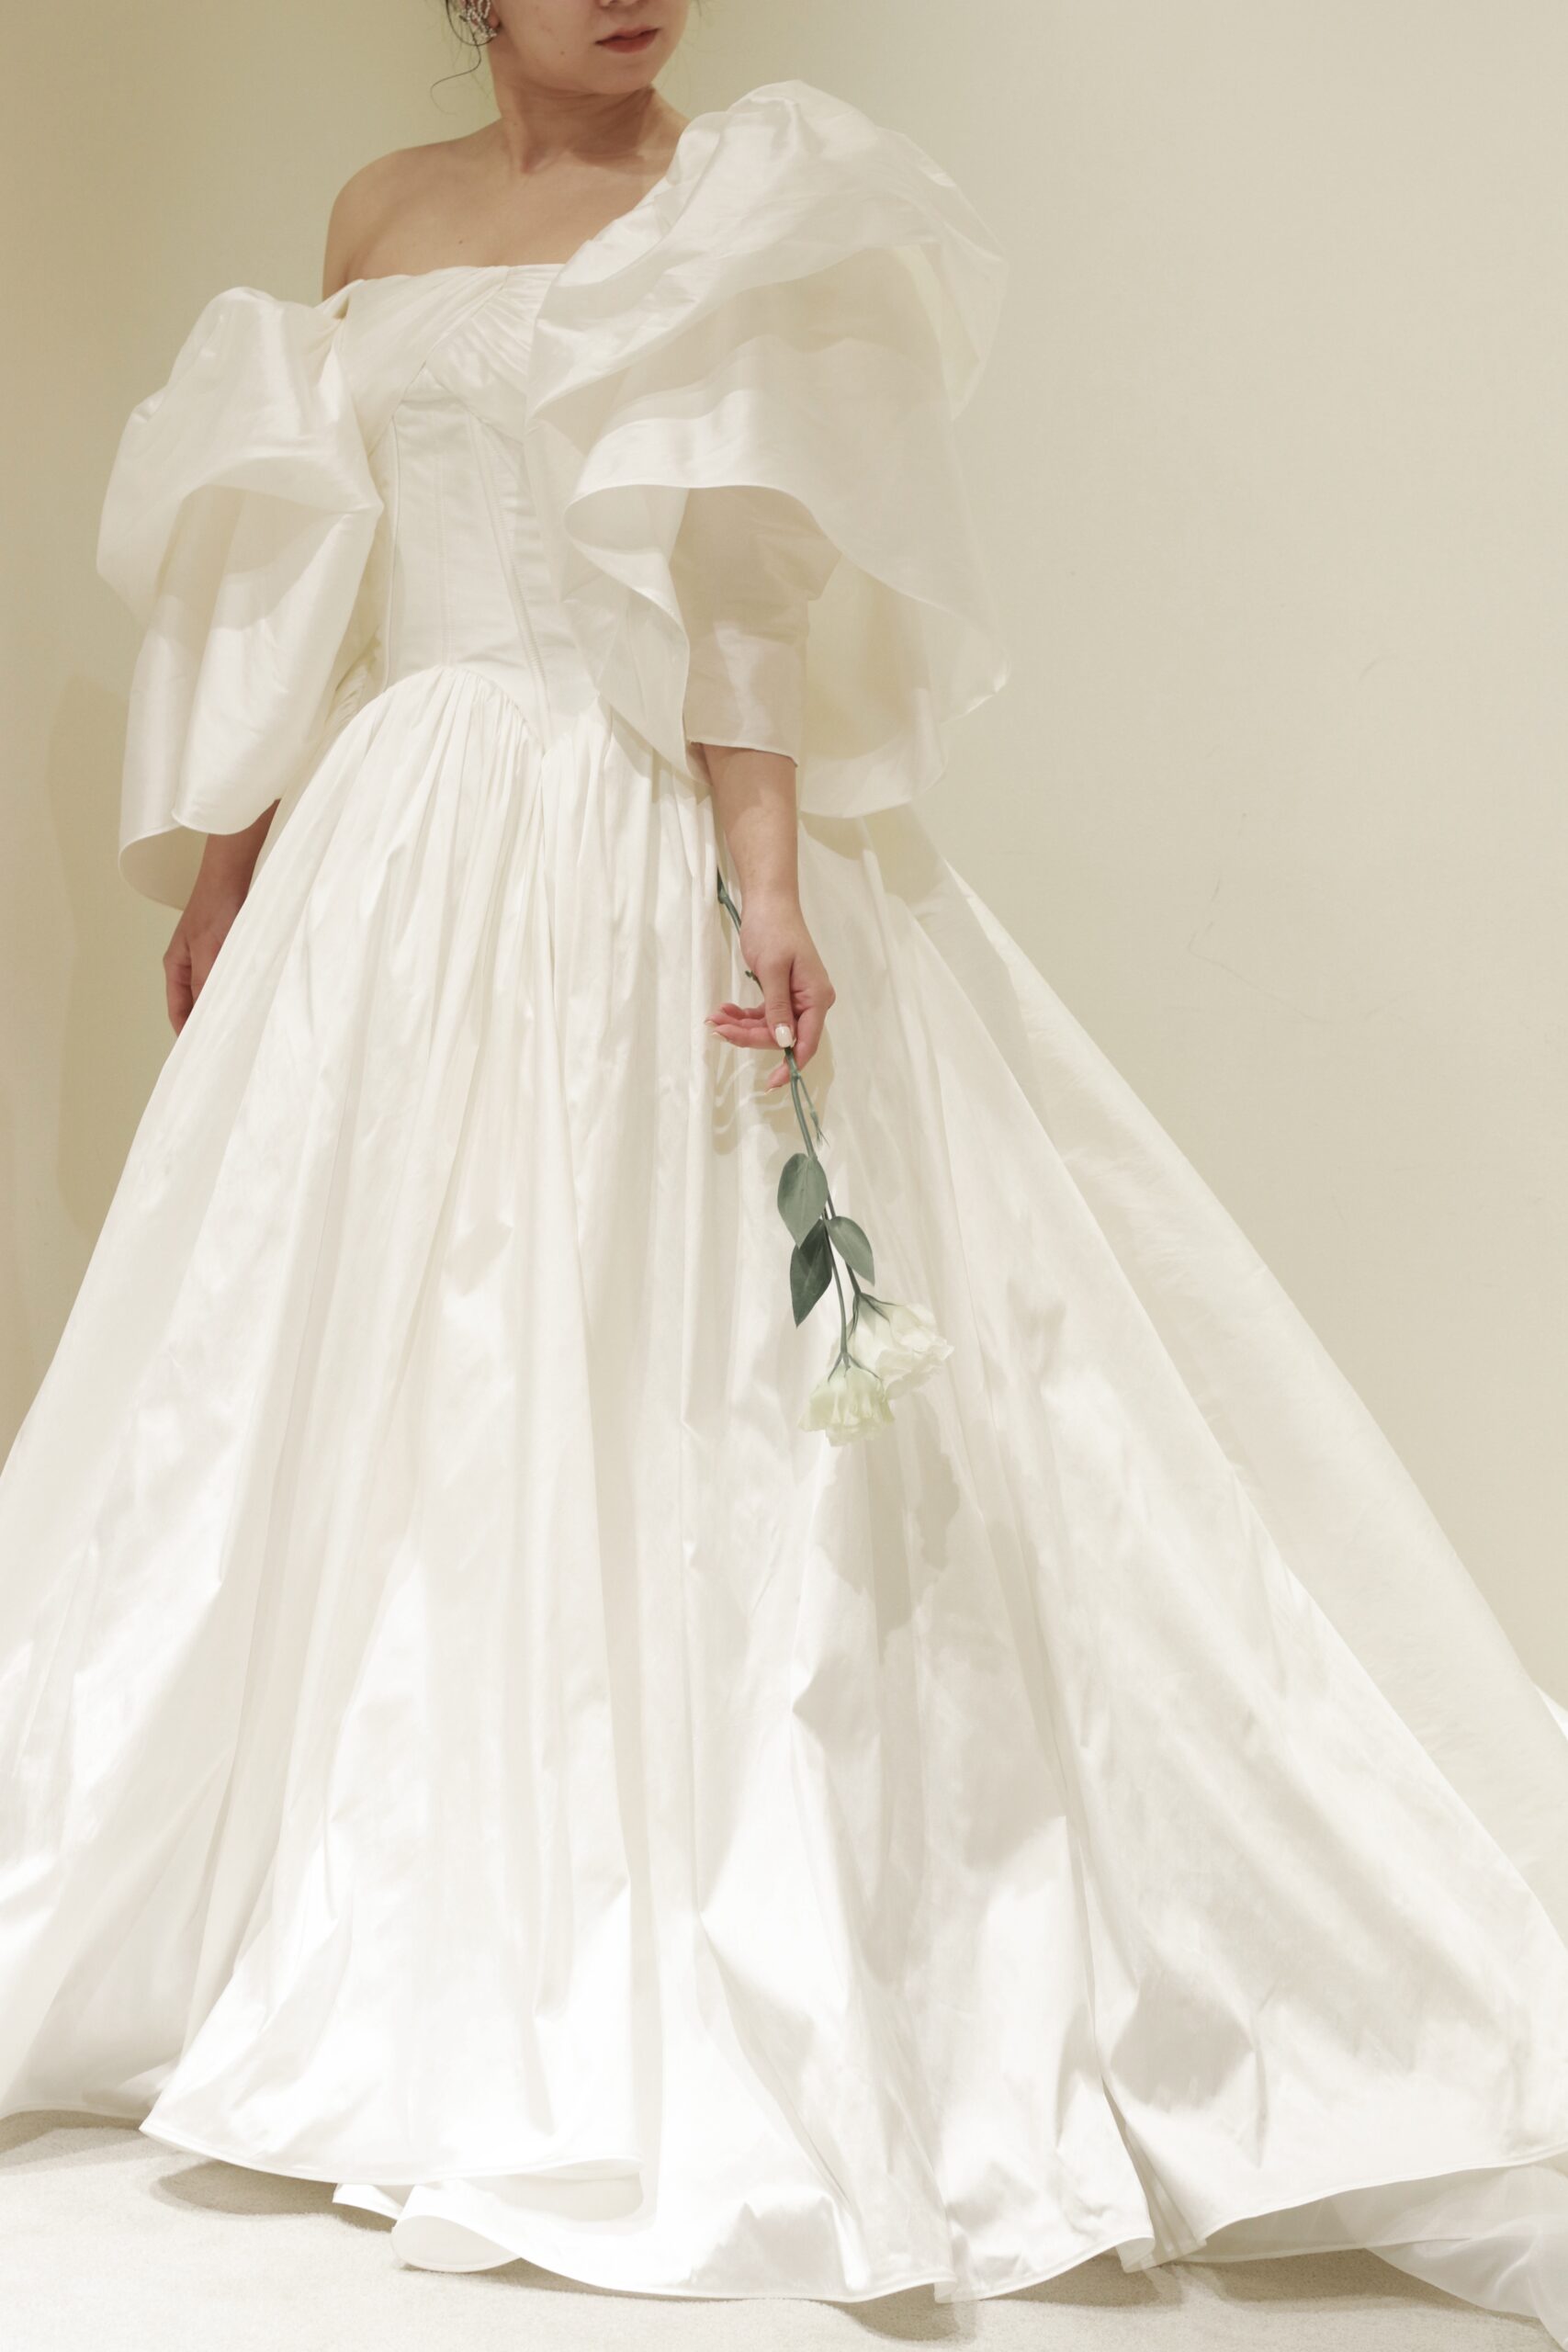 人気ショップザトリートドレッシングアディション店に新作で入荷した東京エリアの花嫁におすすめの新作ウェディングドレス